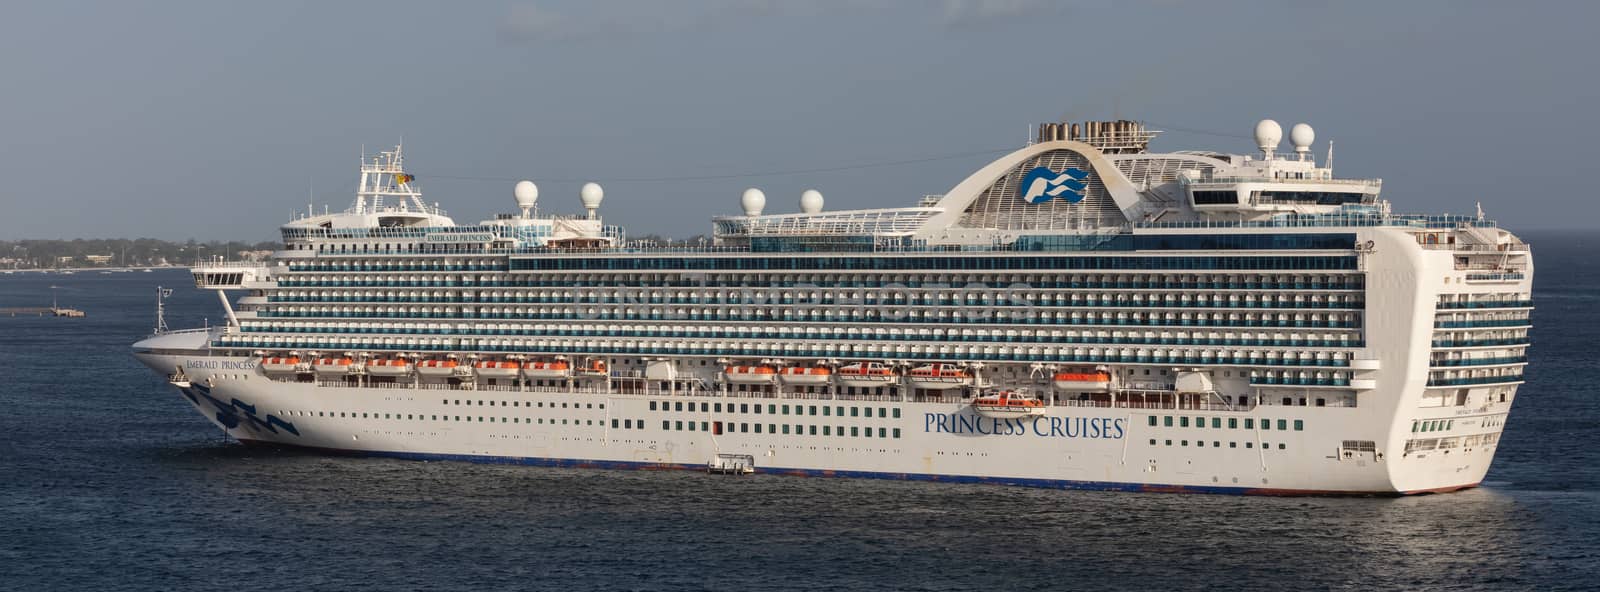 Carlisle Bay, Barbados, West Indies - May 16, 2020: Emerald Princess cruise ship anchored next to Barbados